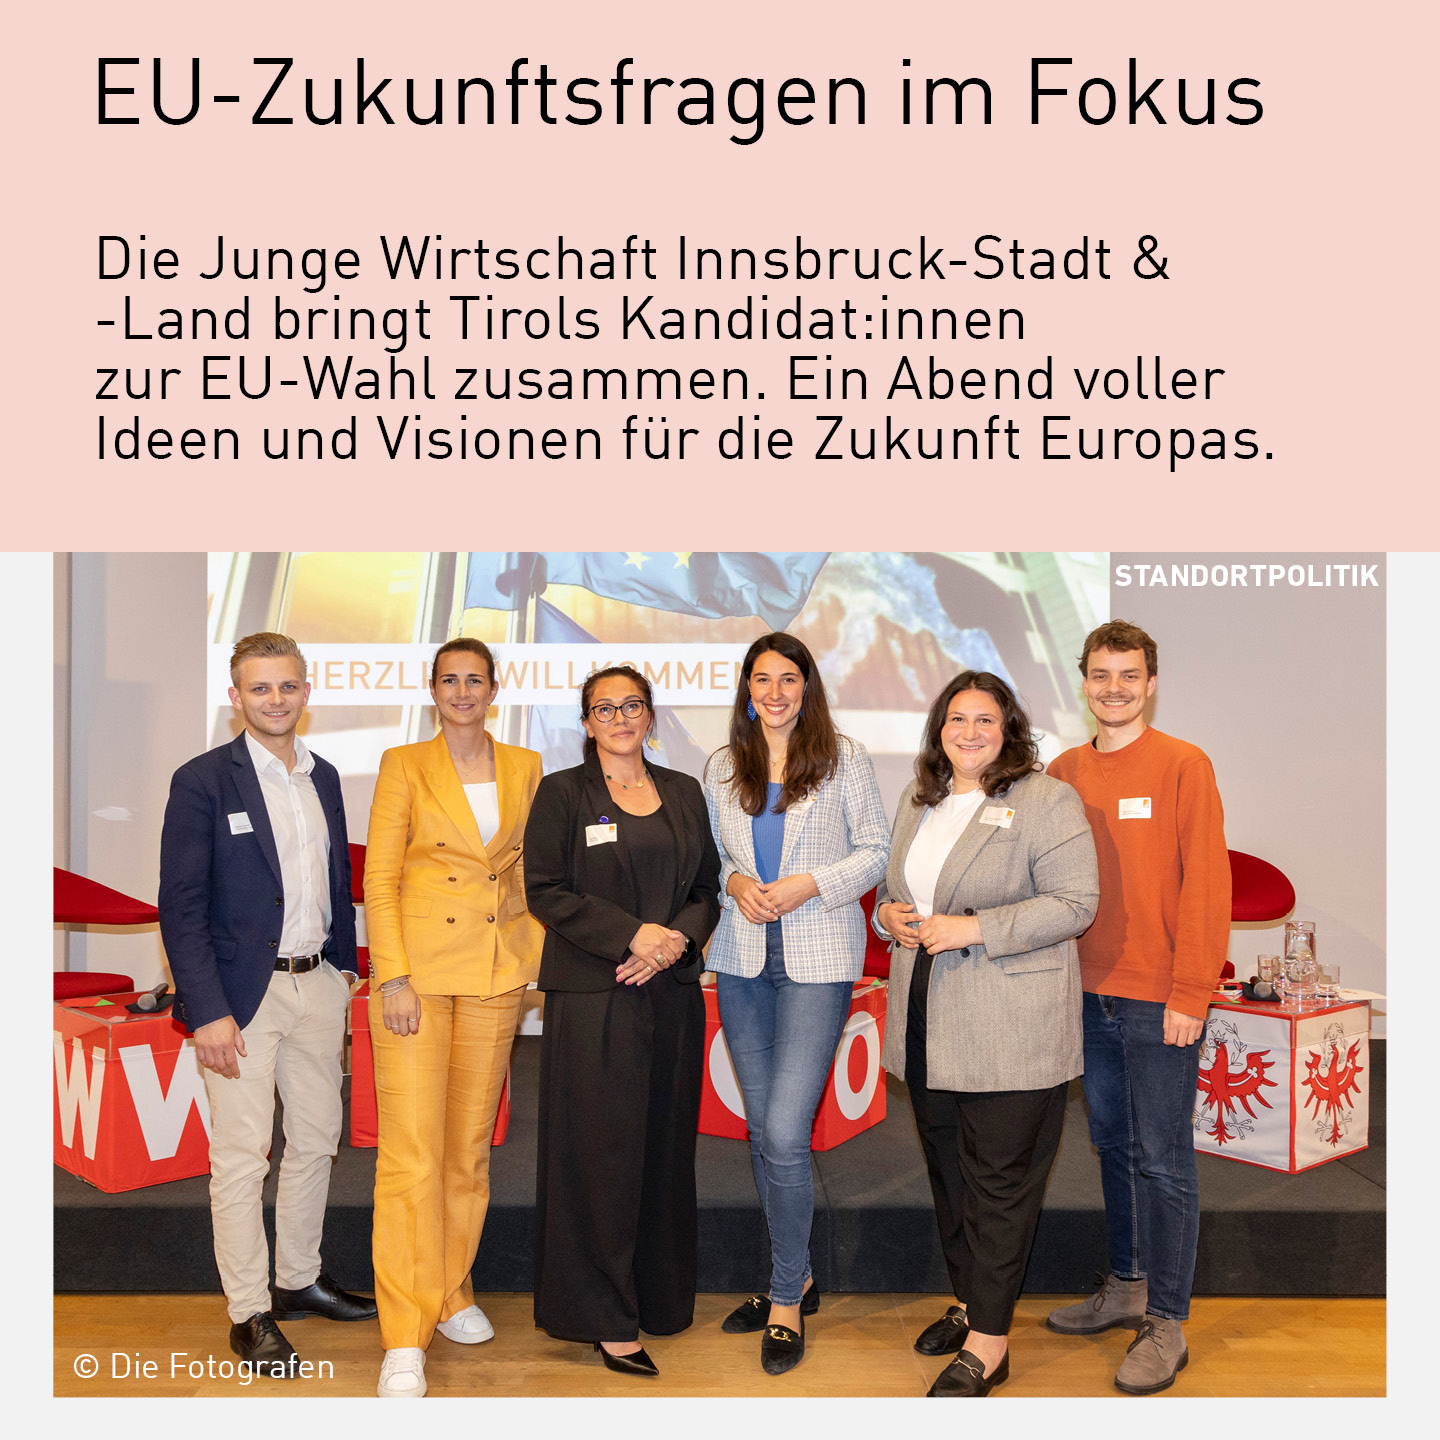 Gruppe von sechs Tiroler Kandidat zur EU-Wahl, die bei einer Podiumsdiskussion der Jungen Wirtschaft Innsbruck-Stadt & -Land stehen. Sie lächeln in die Kamera vor einem Hintergrund mit "Herzlich Willkommen" und WK Tirol-Logos.